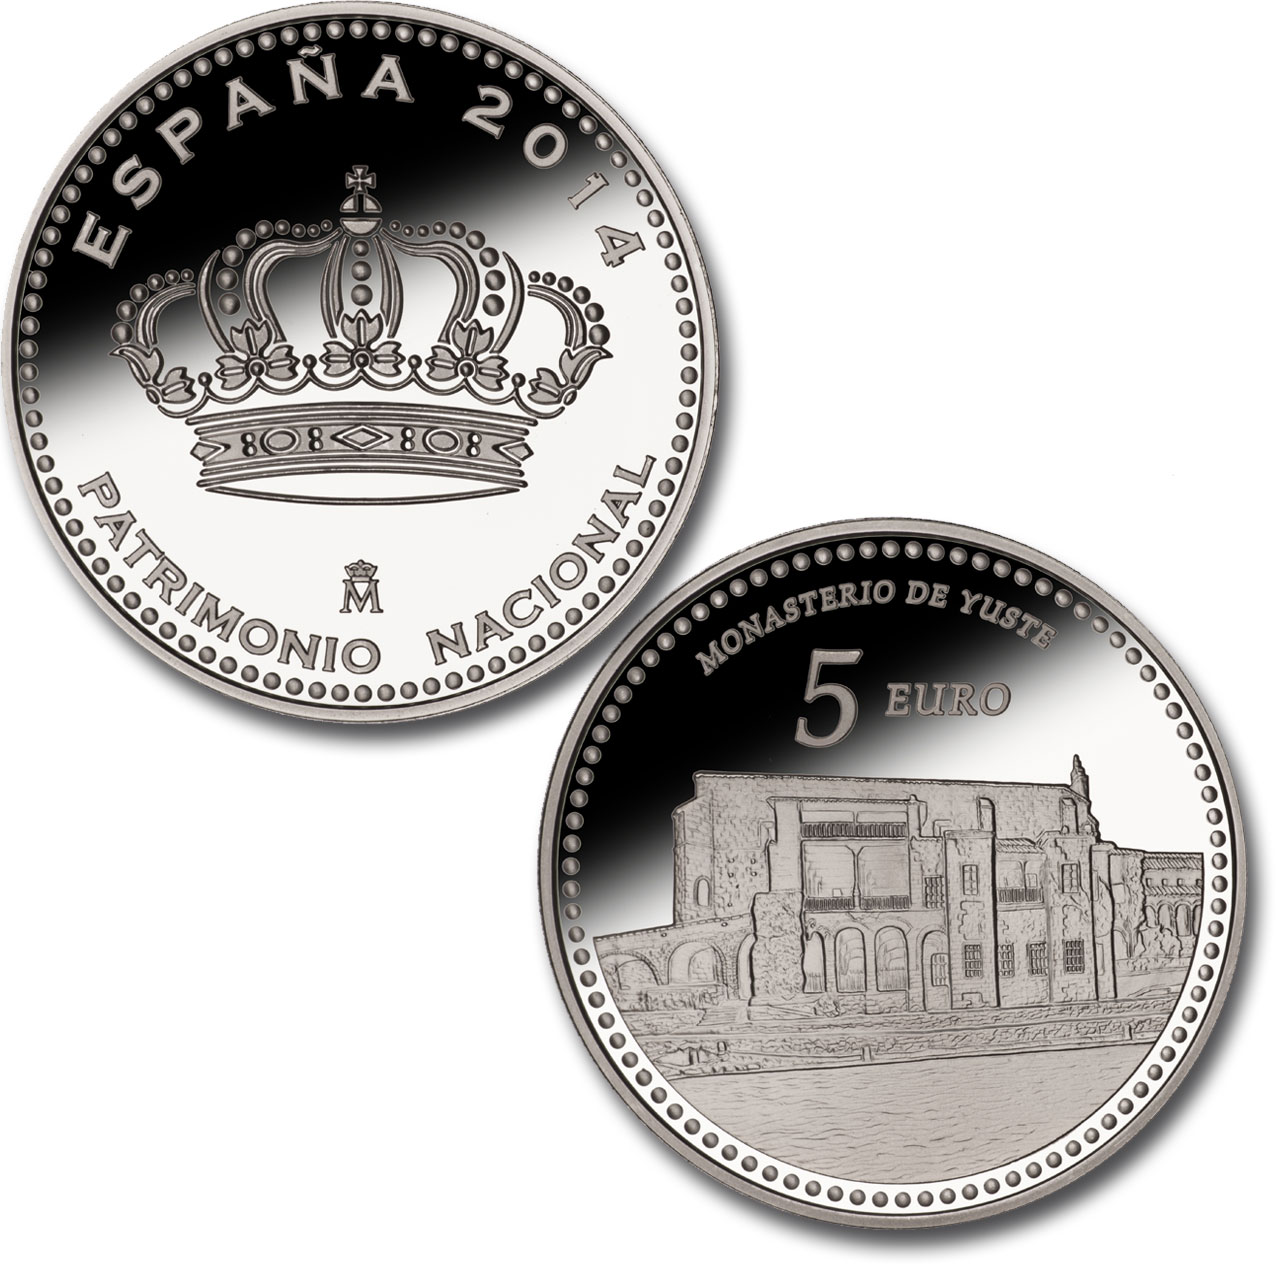 Palacio Real de Madrid - 4 reales plata . Haga clic para ver imagen ampliada. Abre en ventana nueva